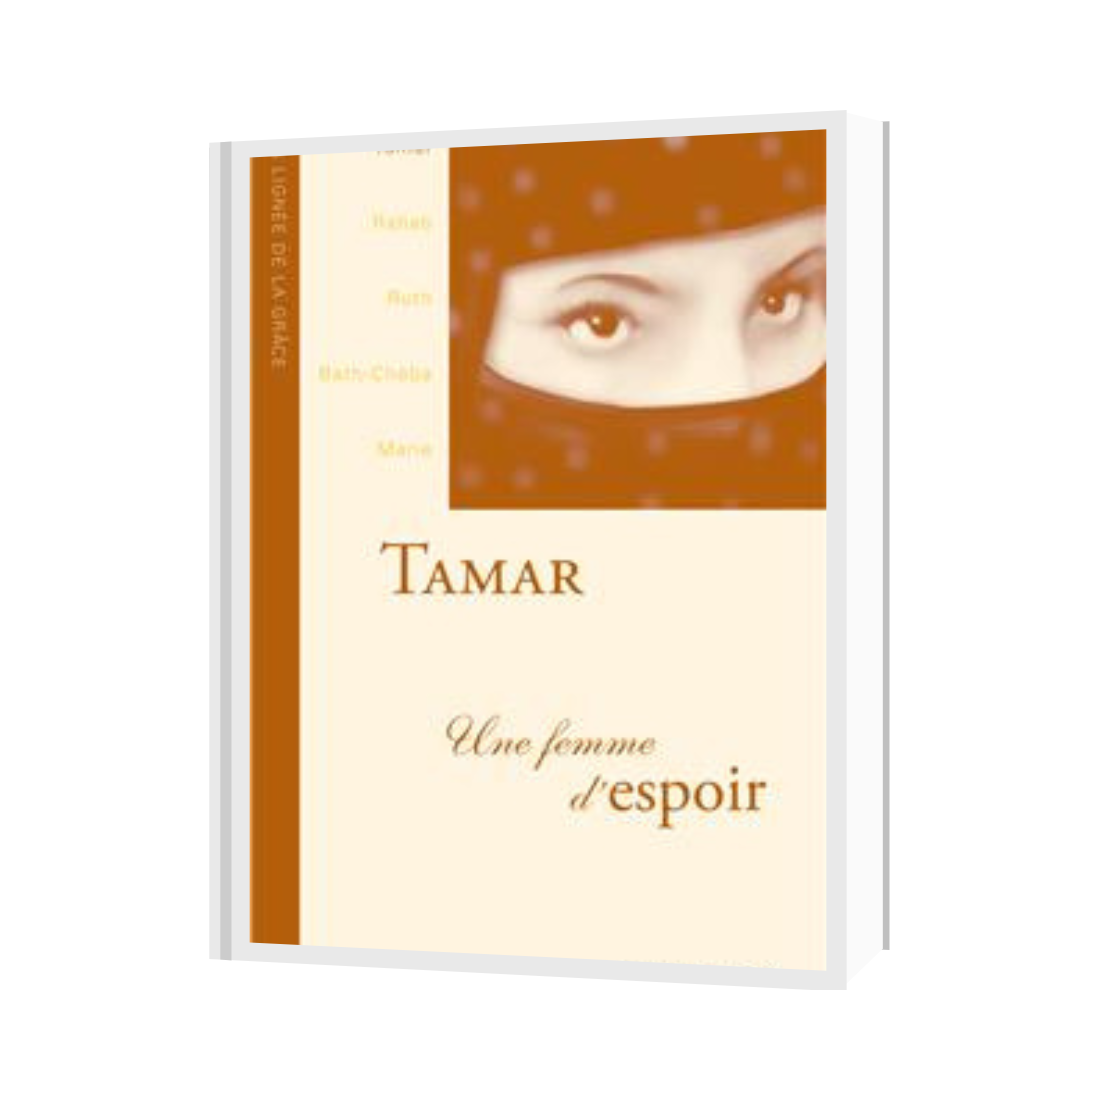 Tamar, une femme d'espoir
La lignée de la grâce